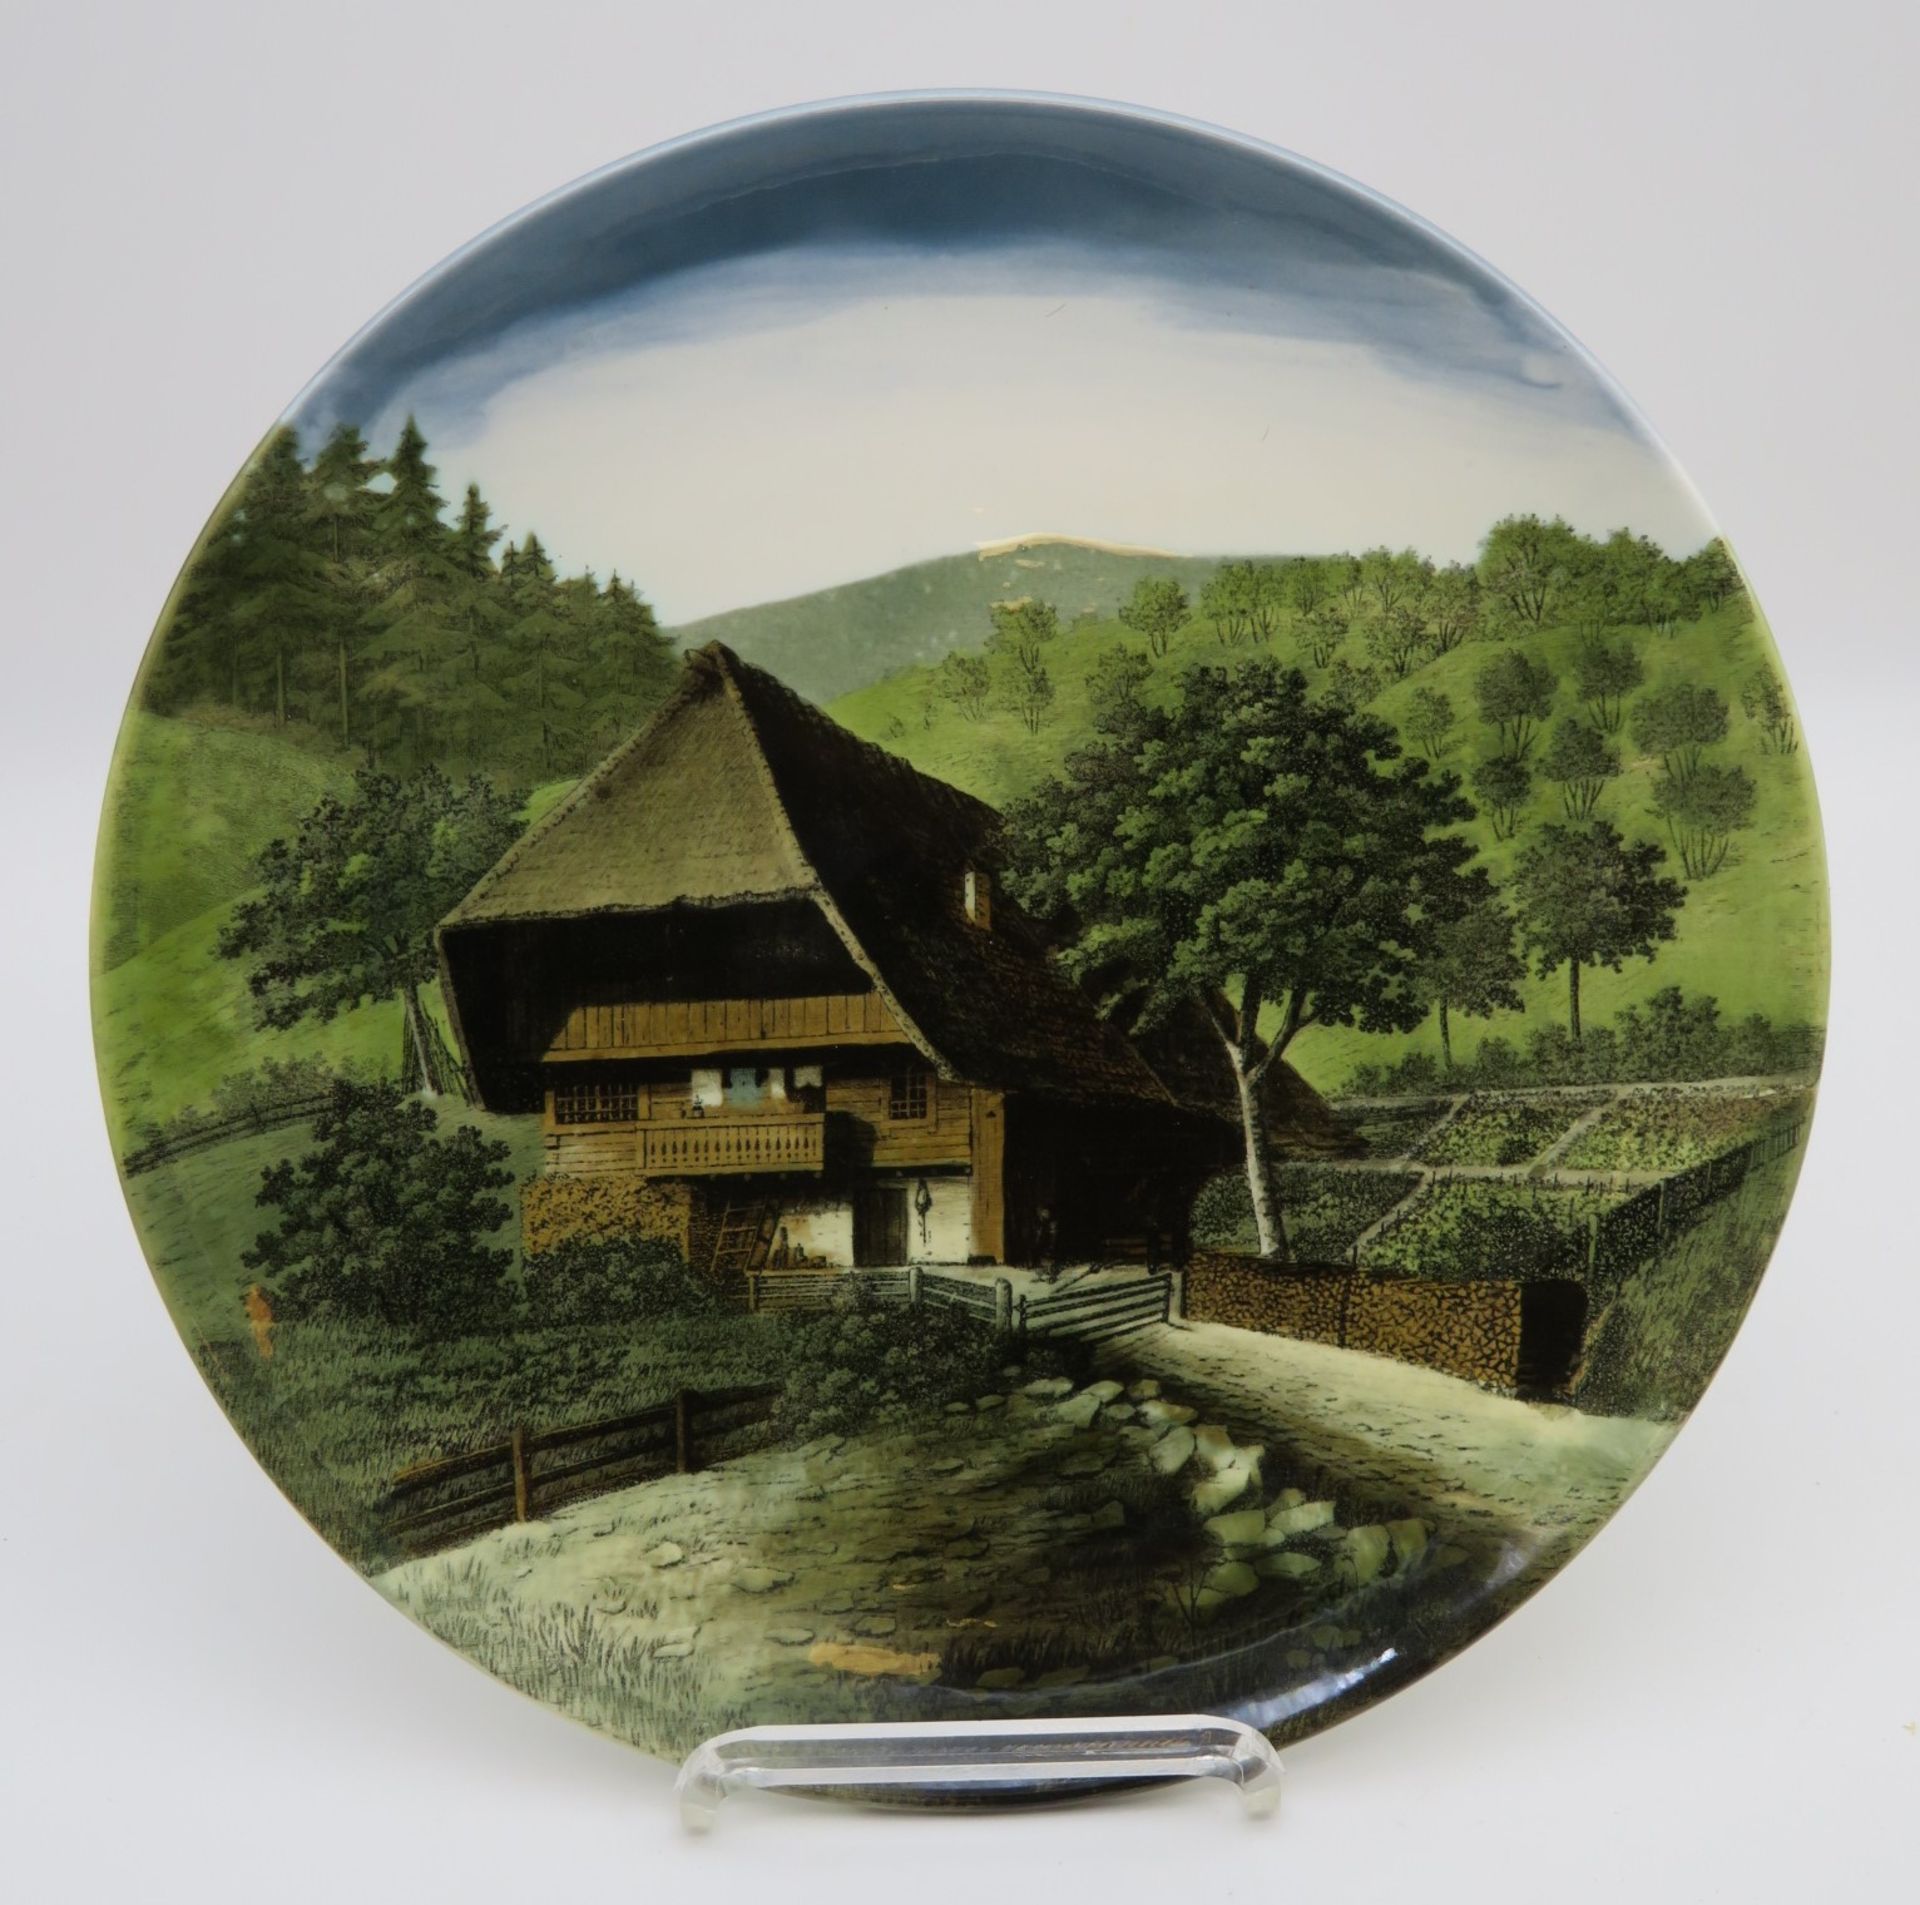 2 Teller, G. Schmieder Zell am Hammersbach, Fayence mit Ansichten von Schwarzwaldhäusern, gem., h 3 - Bild 2 aus 3